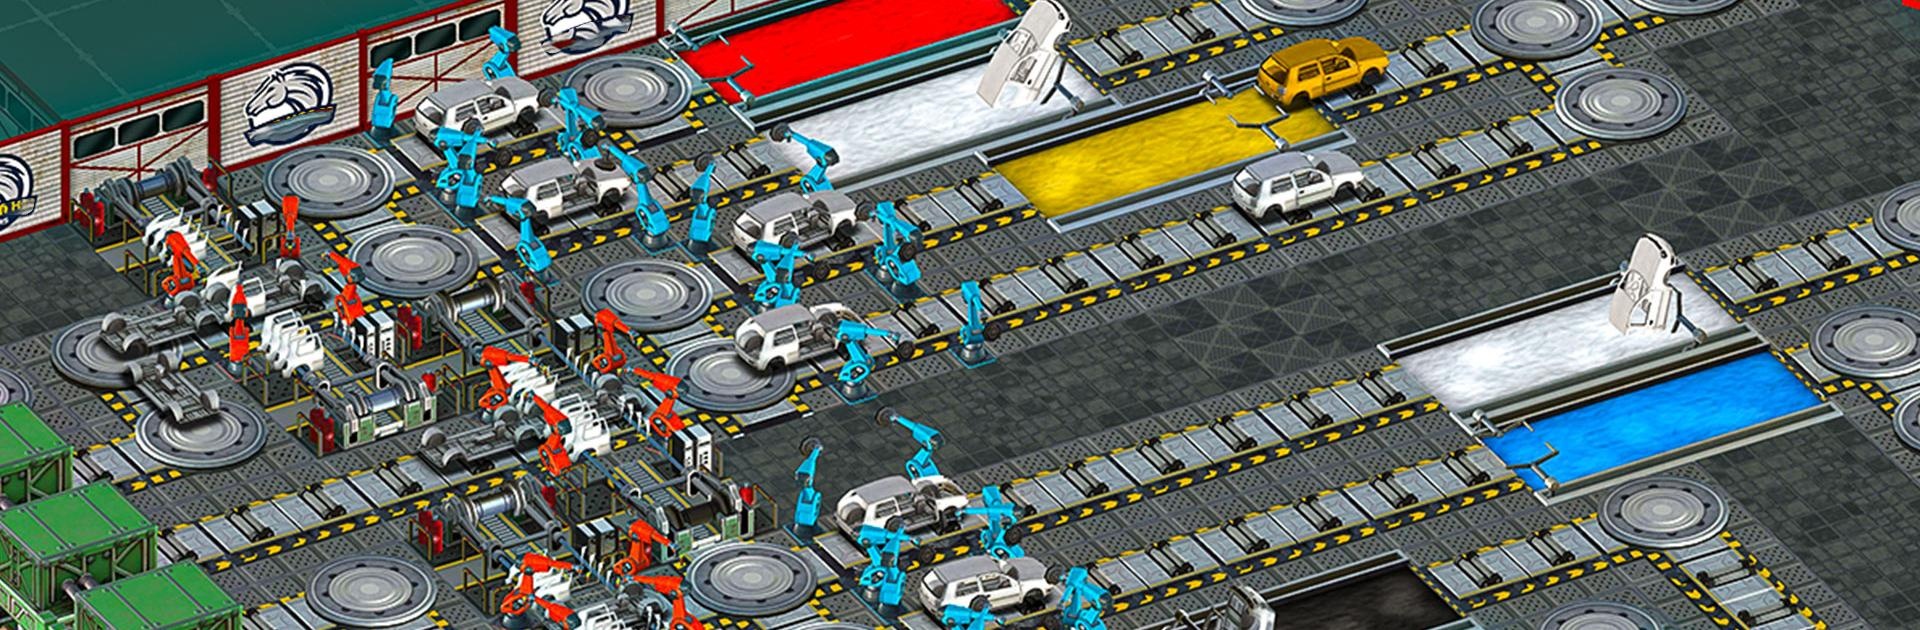 Car Factory Simulator